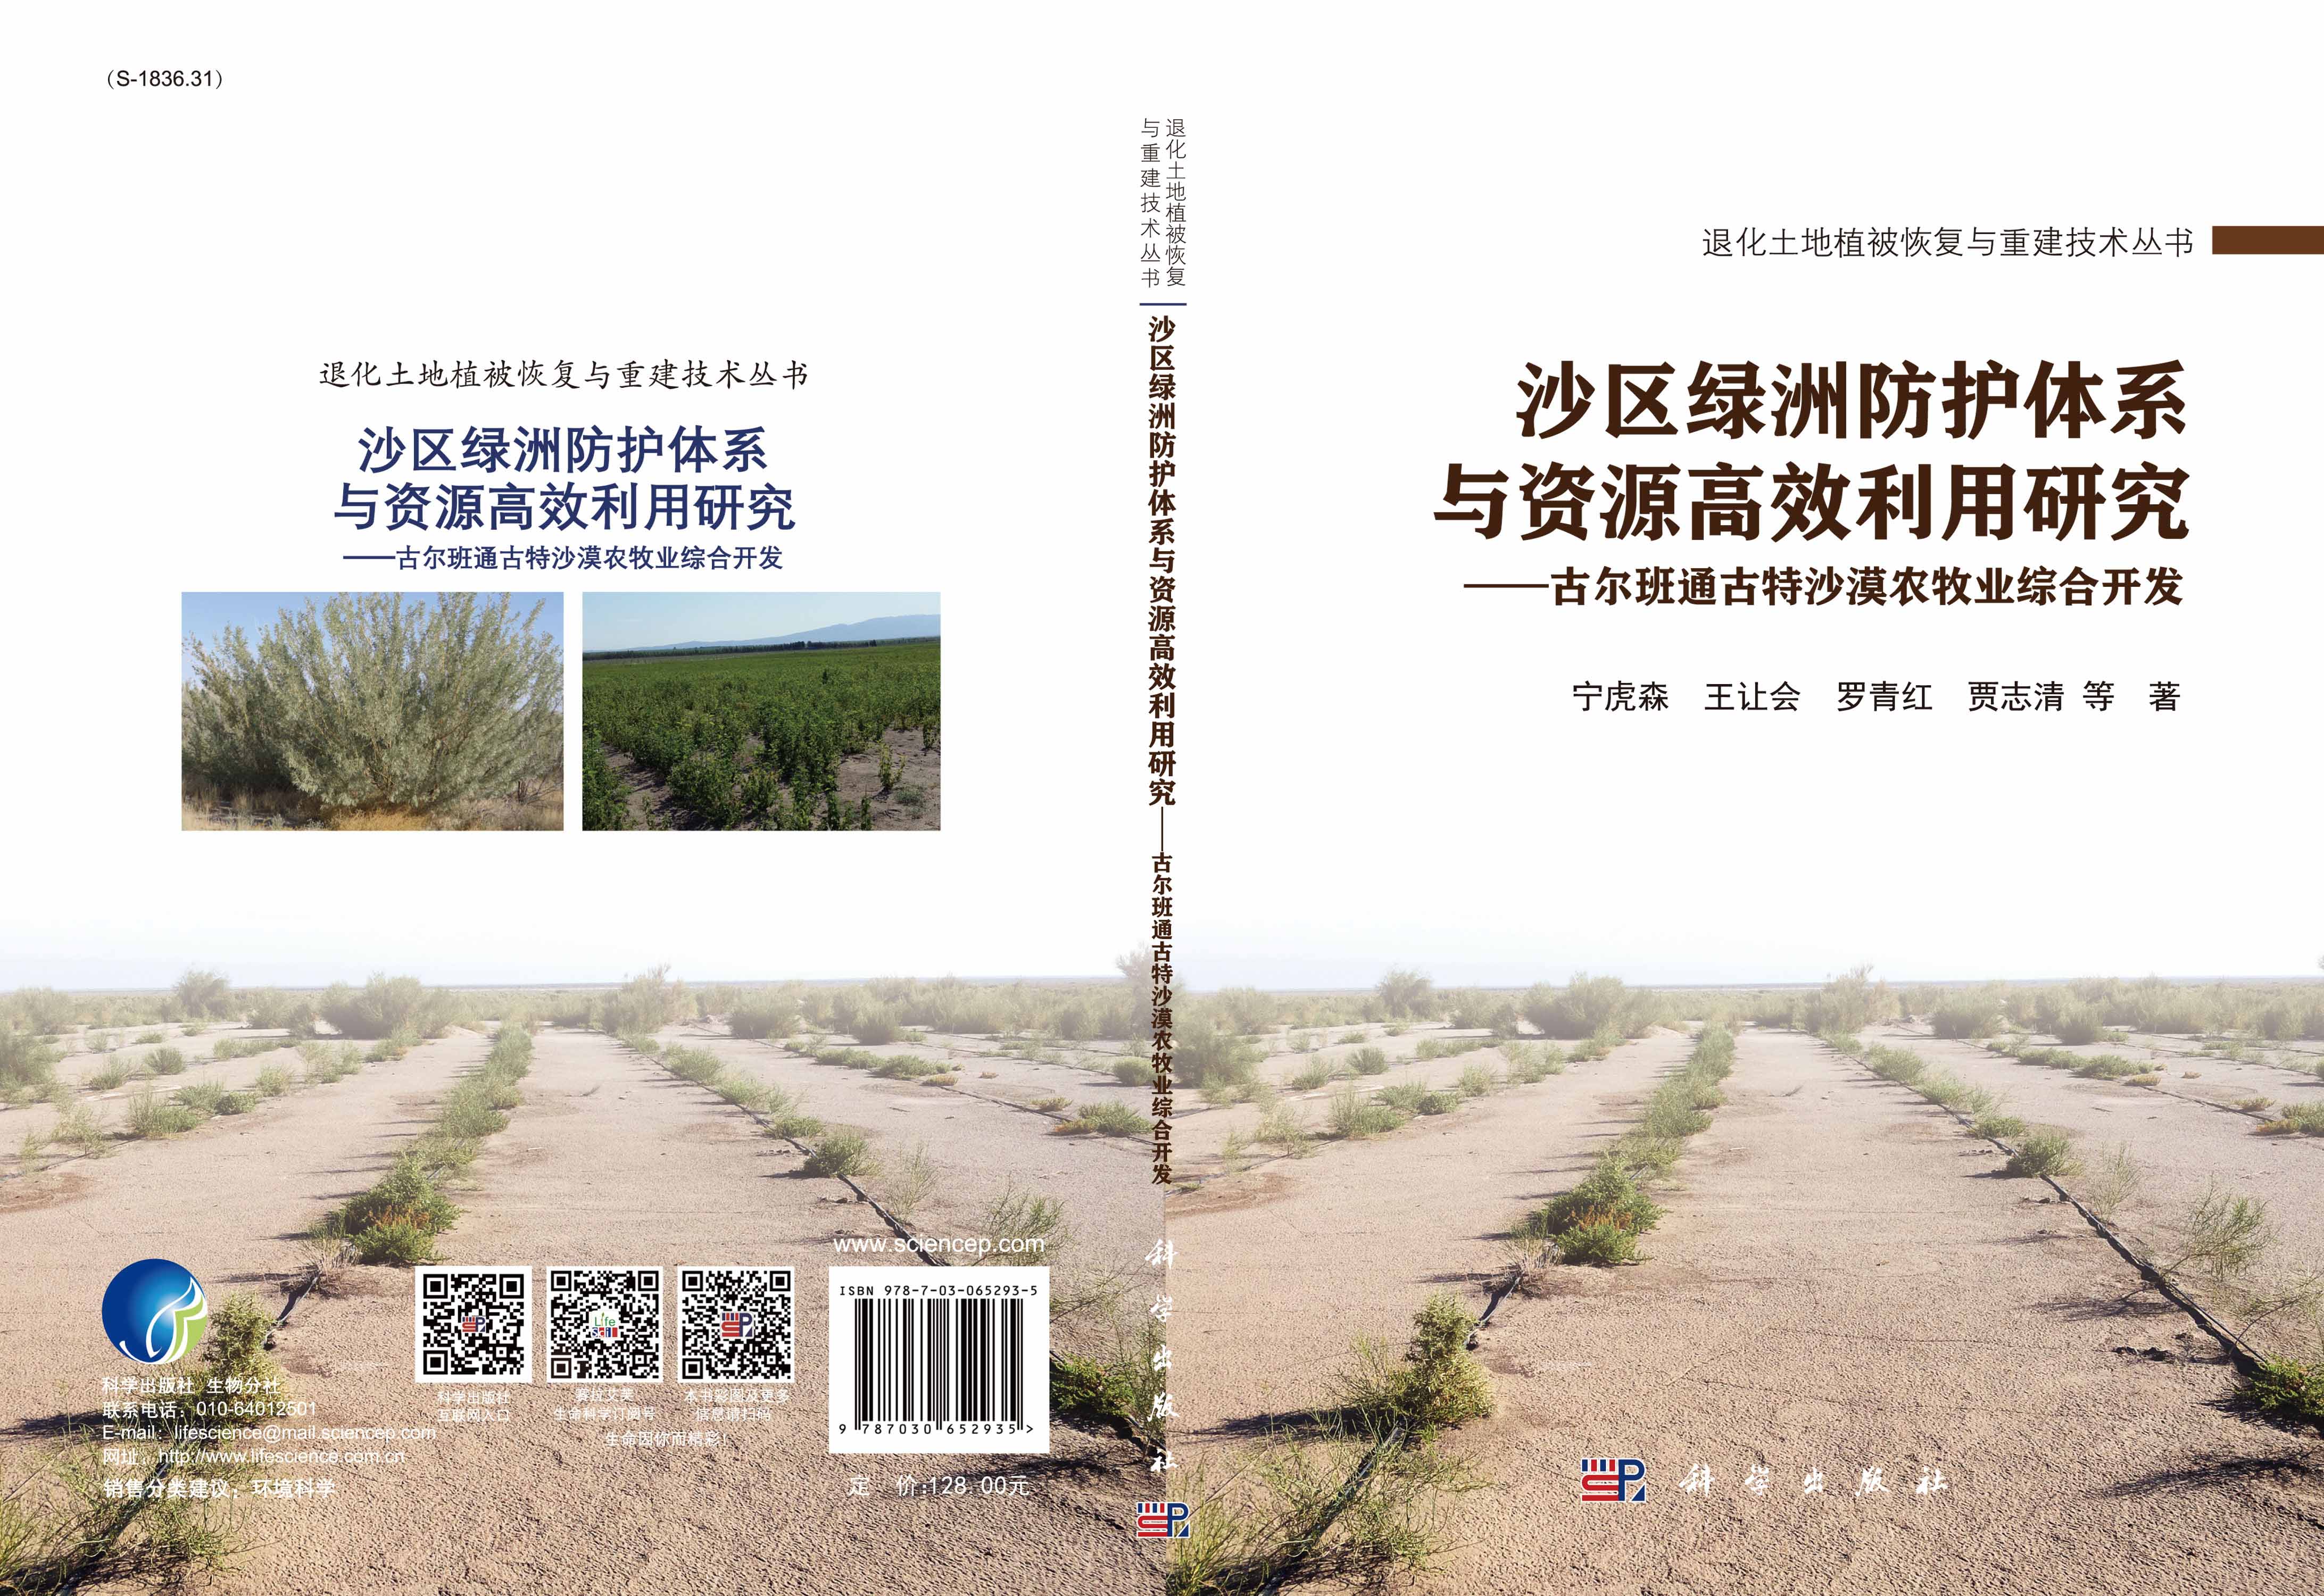 沙区绿洲防护体系与资源高效利用研究——古尔班通古特沙漠农牧业综合开发